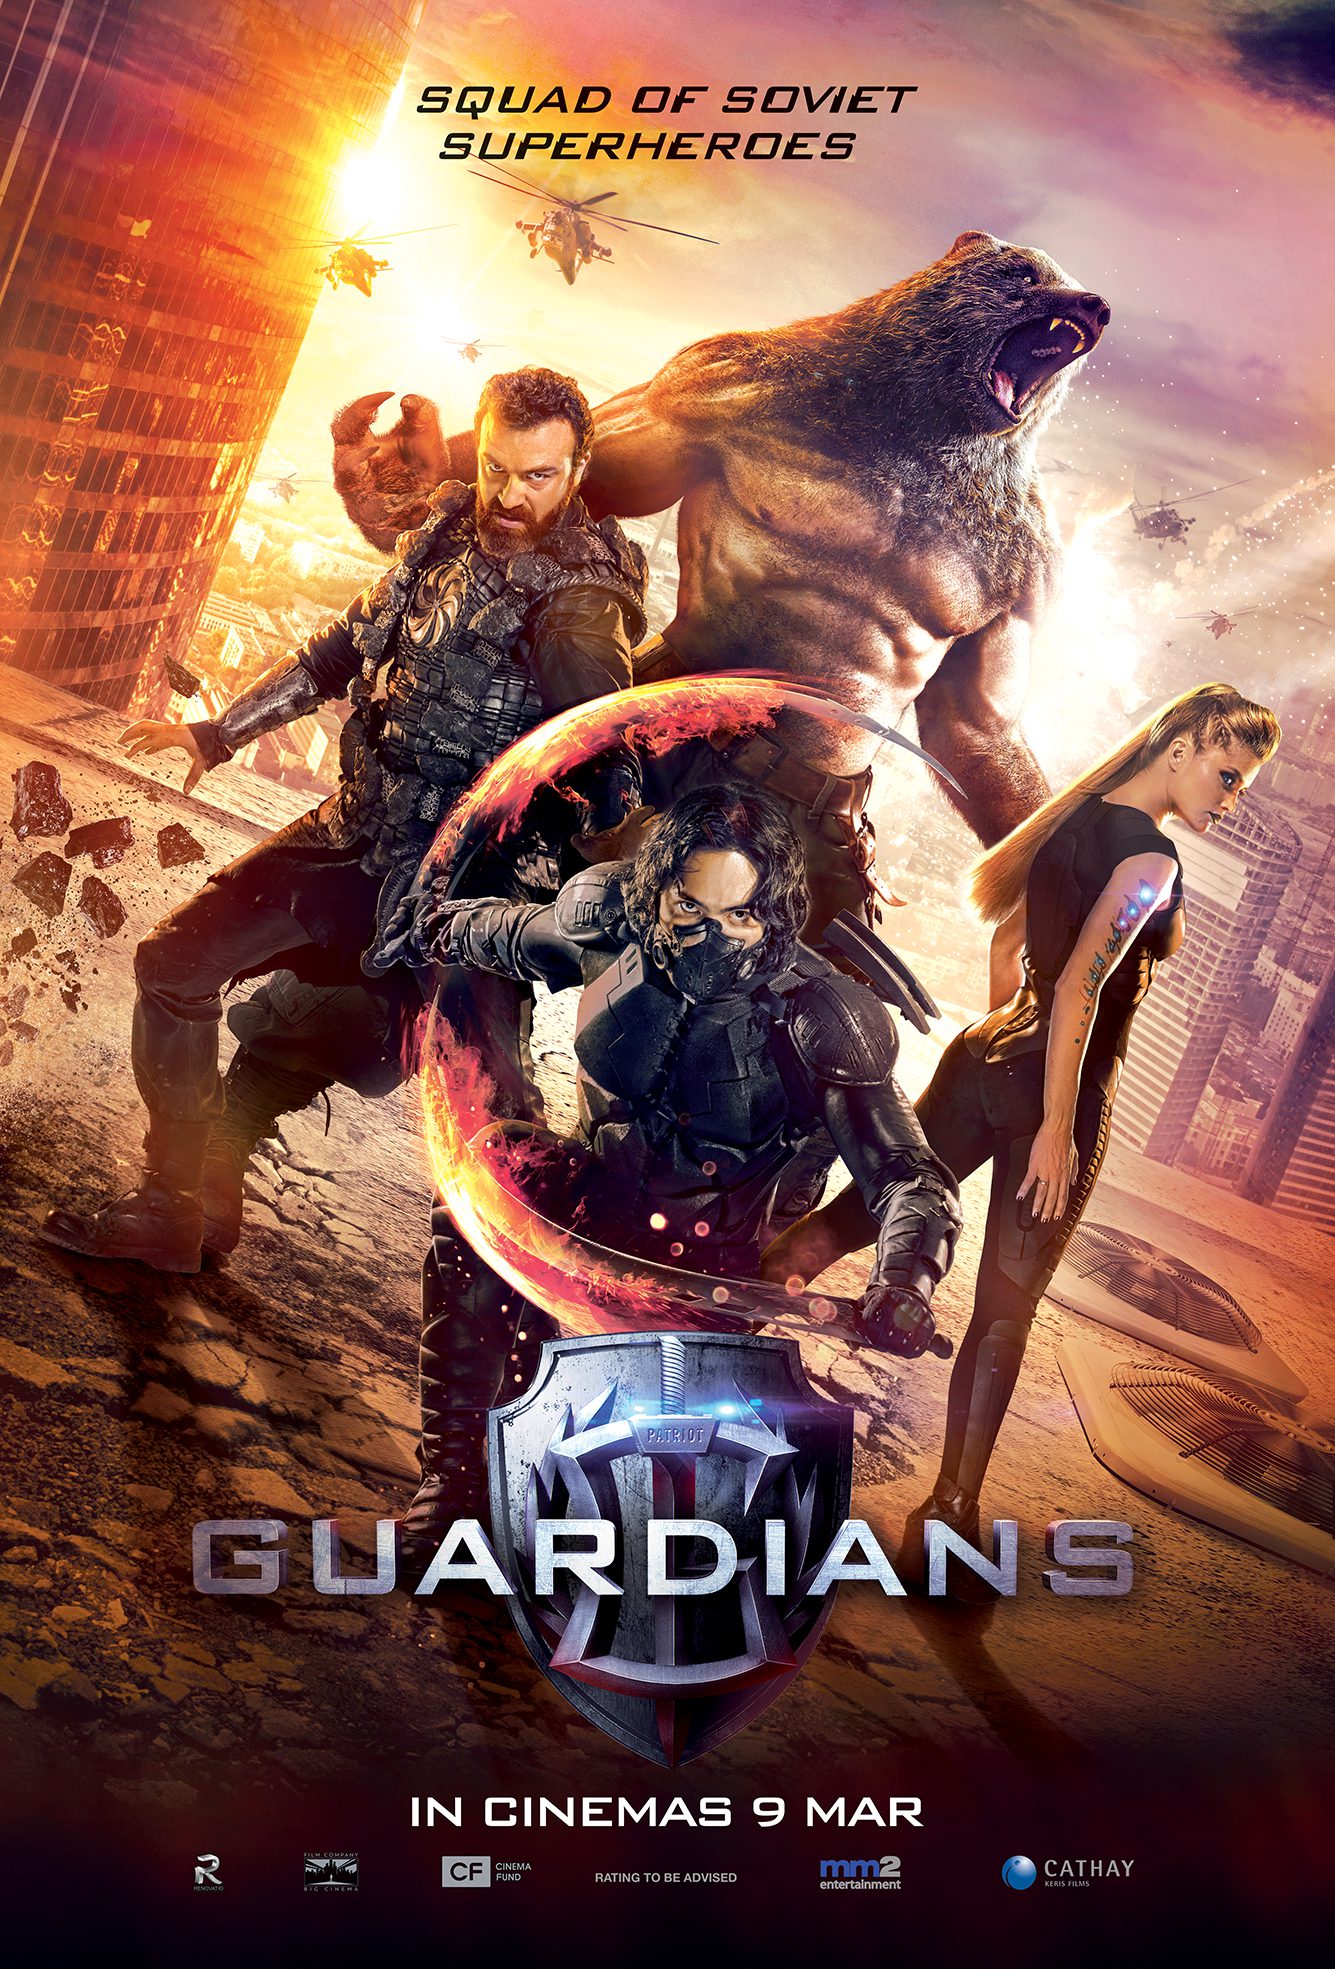 Guardians (MM2 Entertainment)